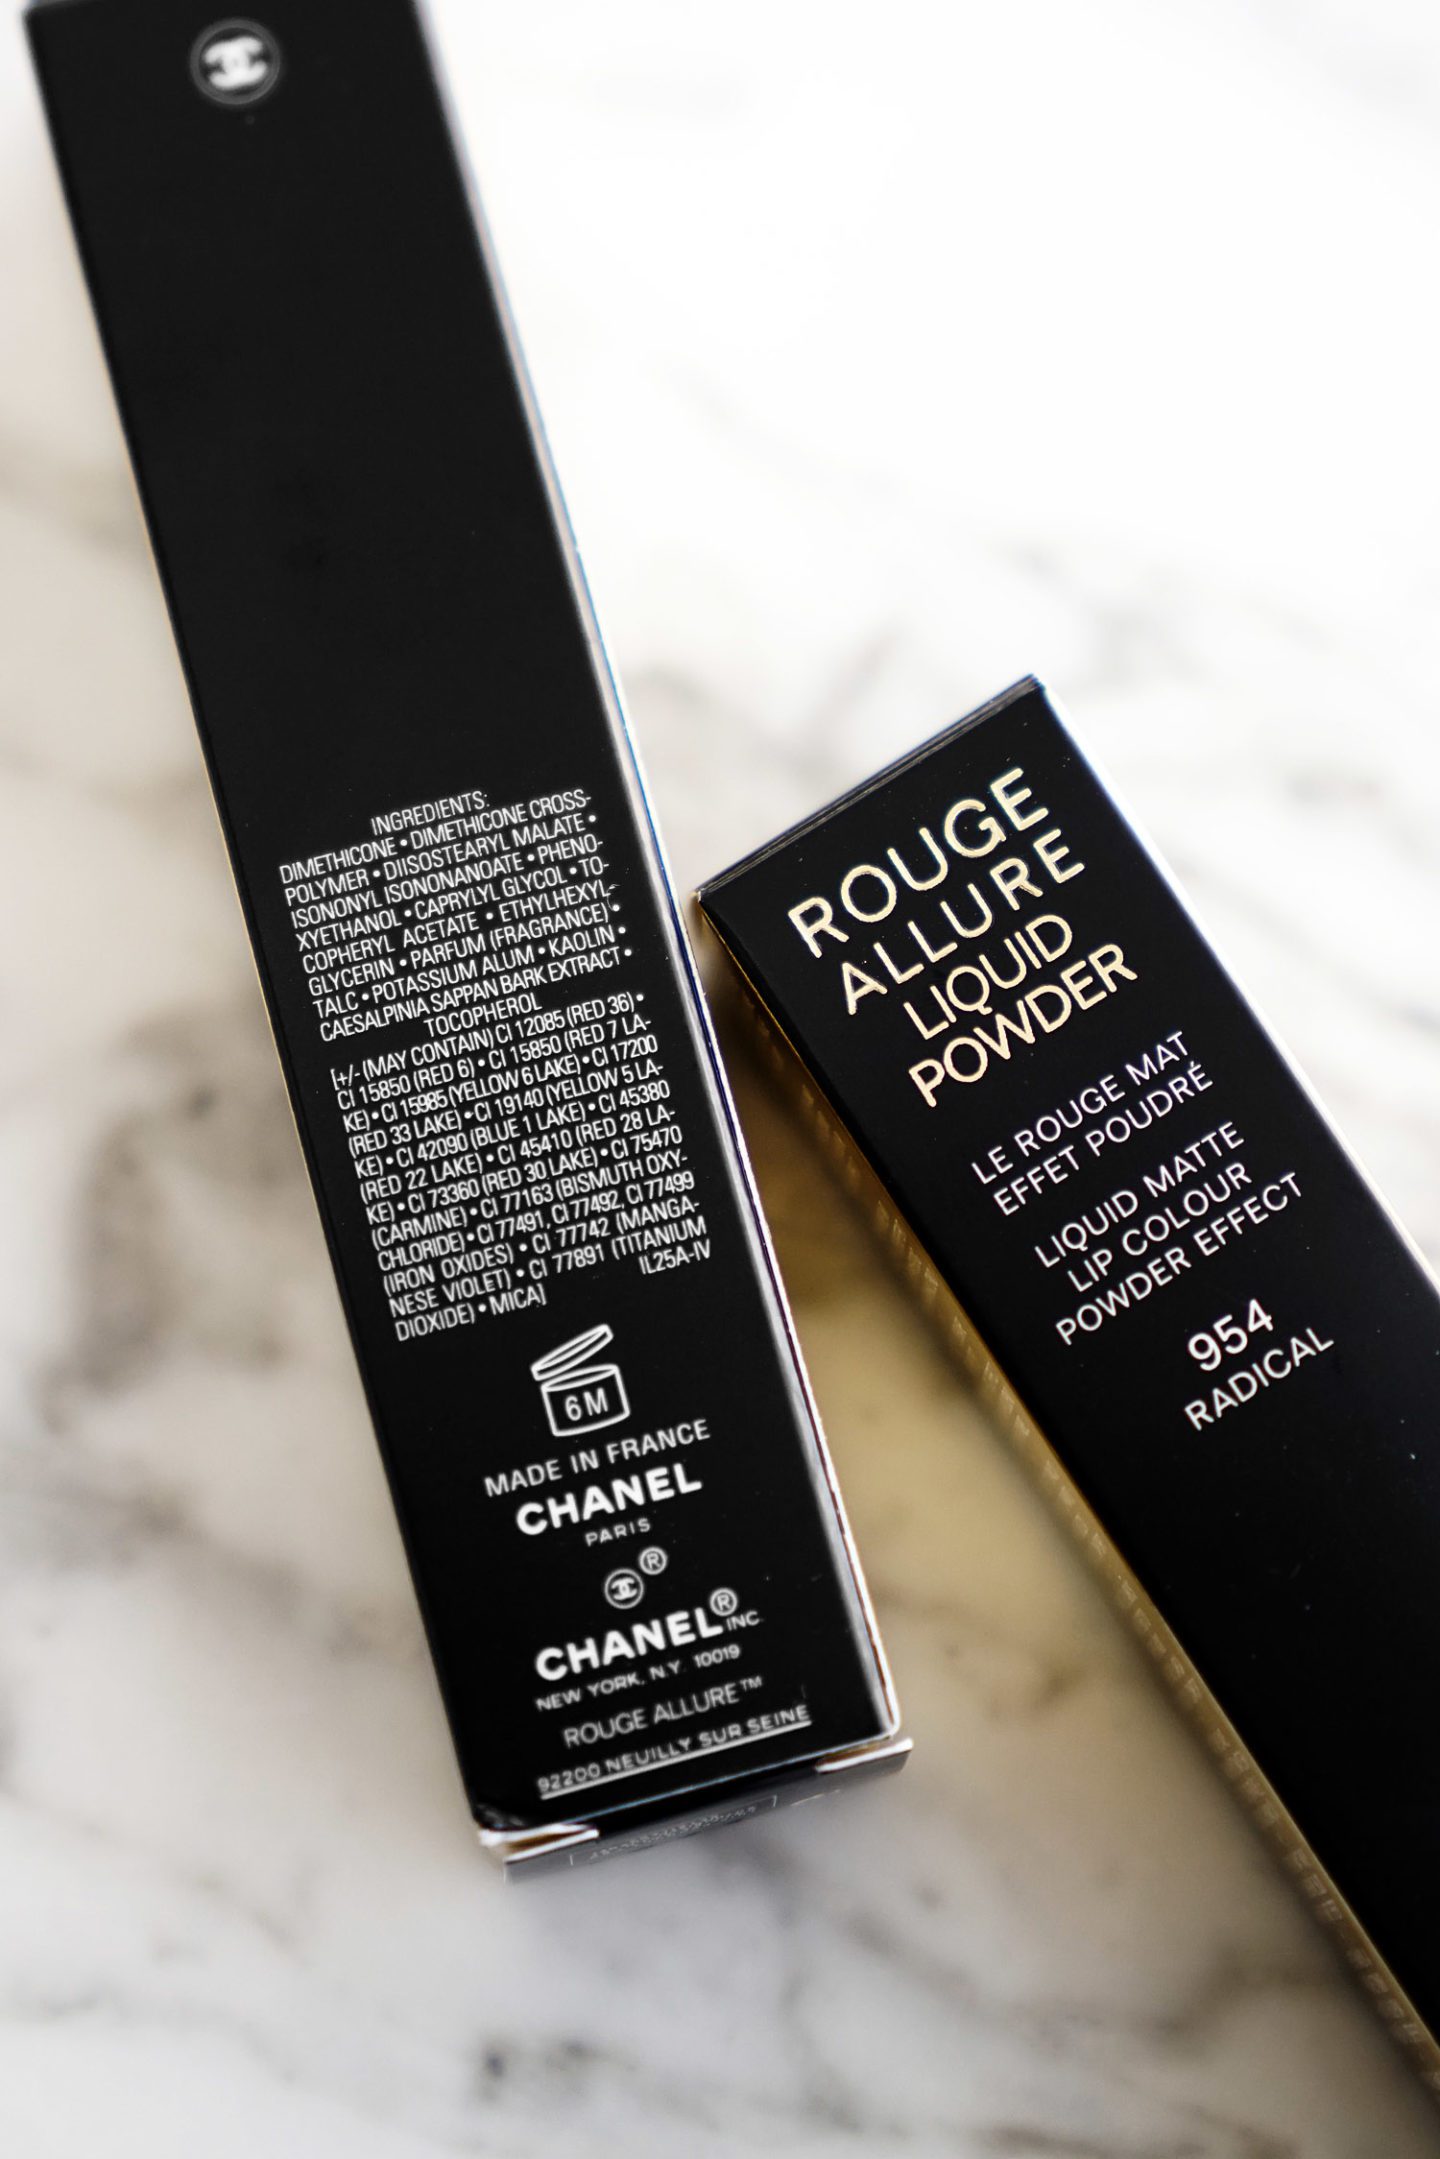 Chanel Rouge Allure Liquid Powder ingredients